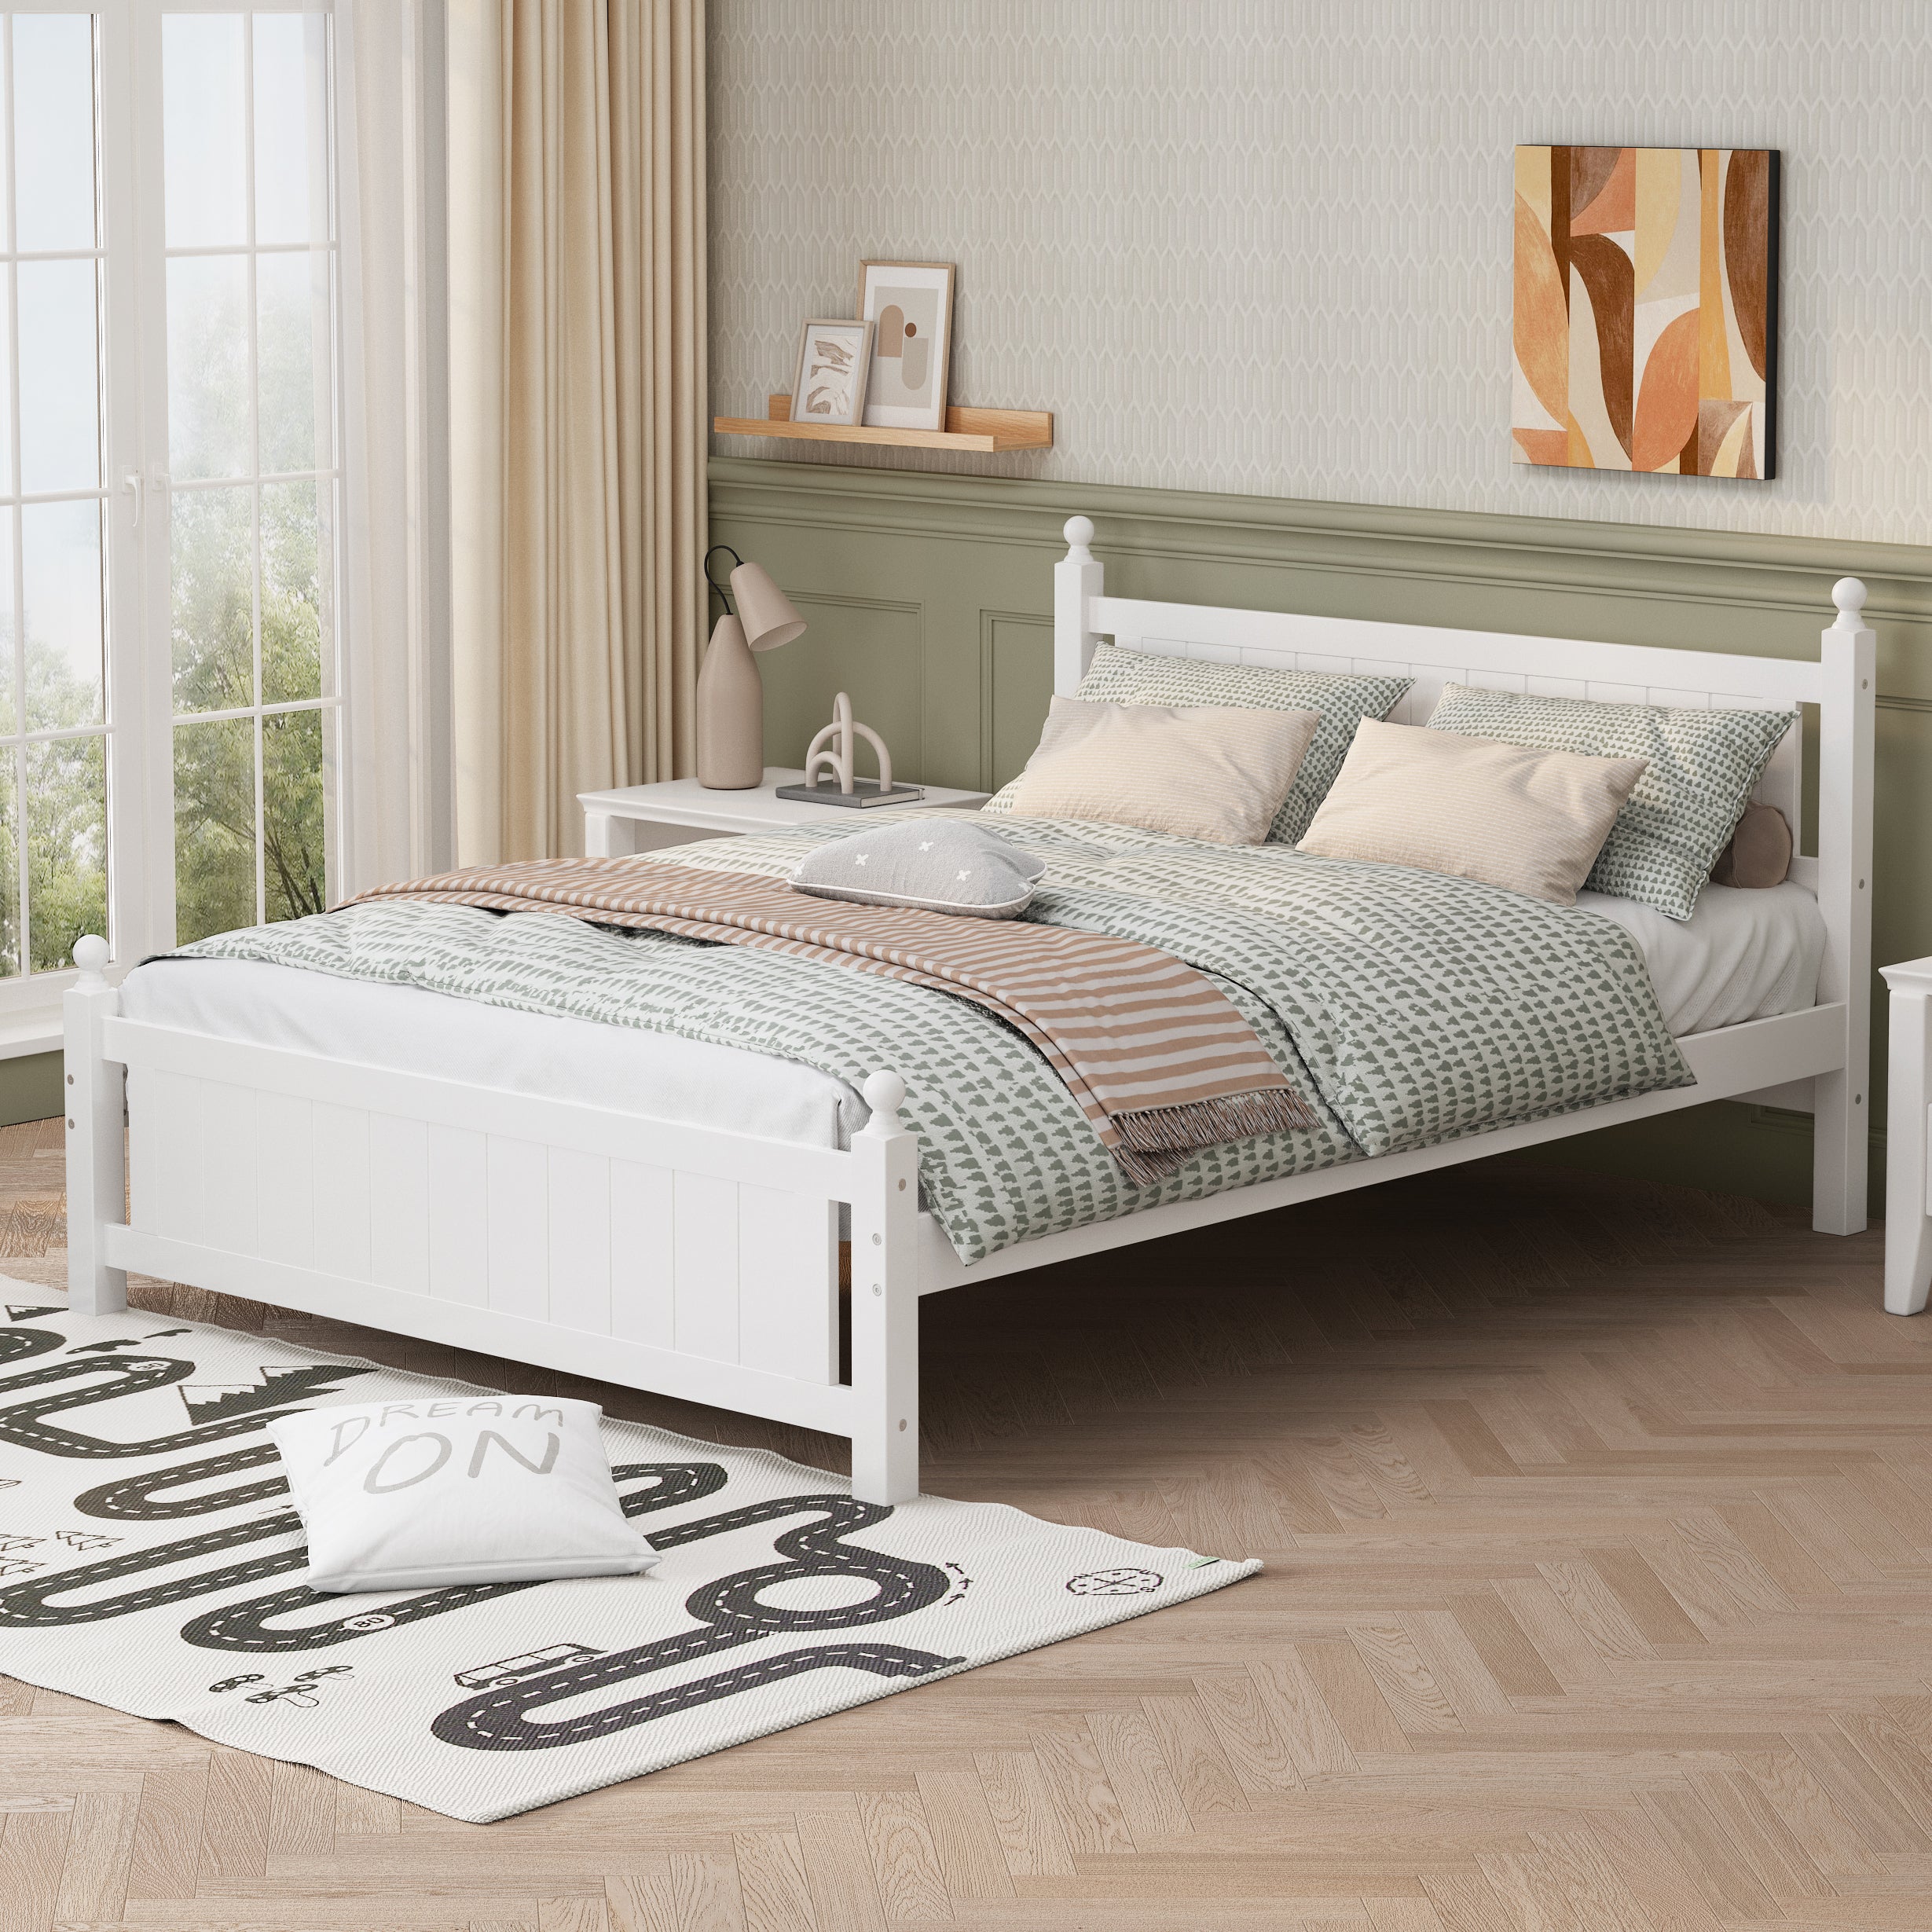 Queen-Size-Solid-Wood-Platform-Bed-Frame-,-White-Beds-&-Bed-Frames